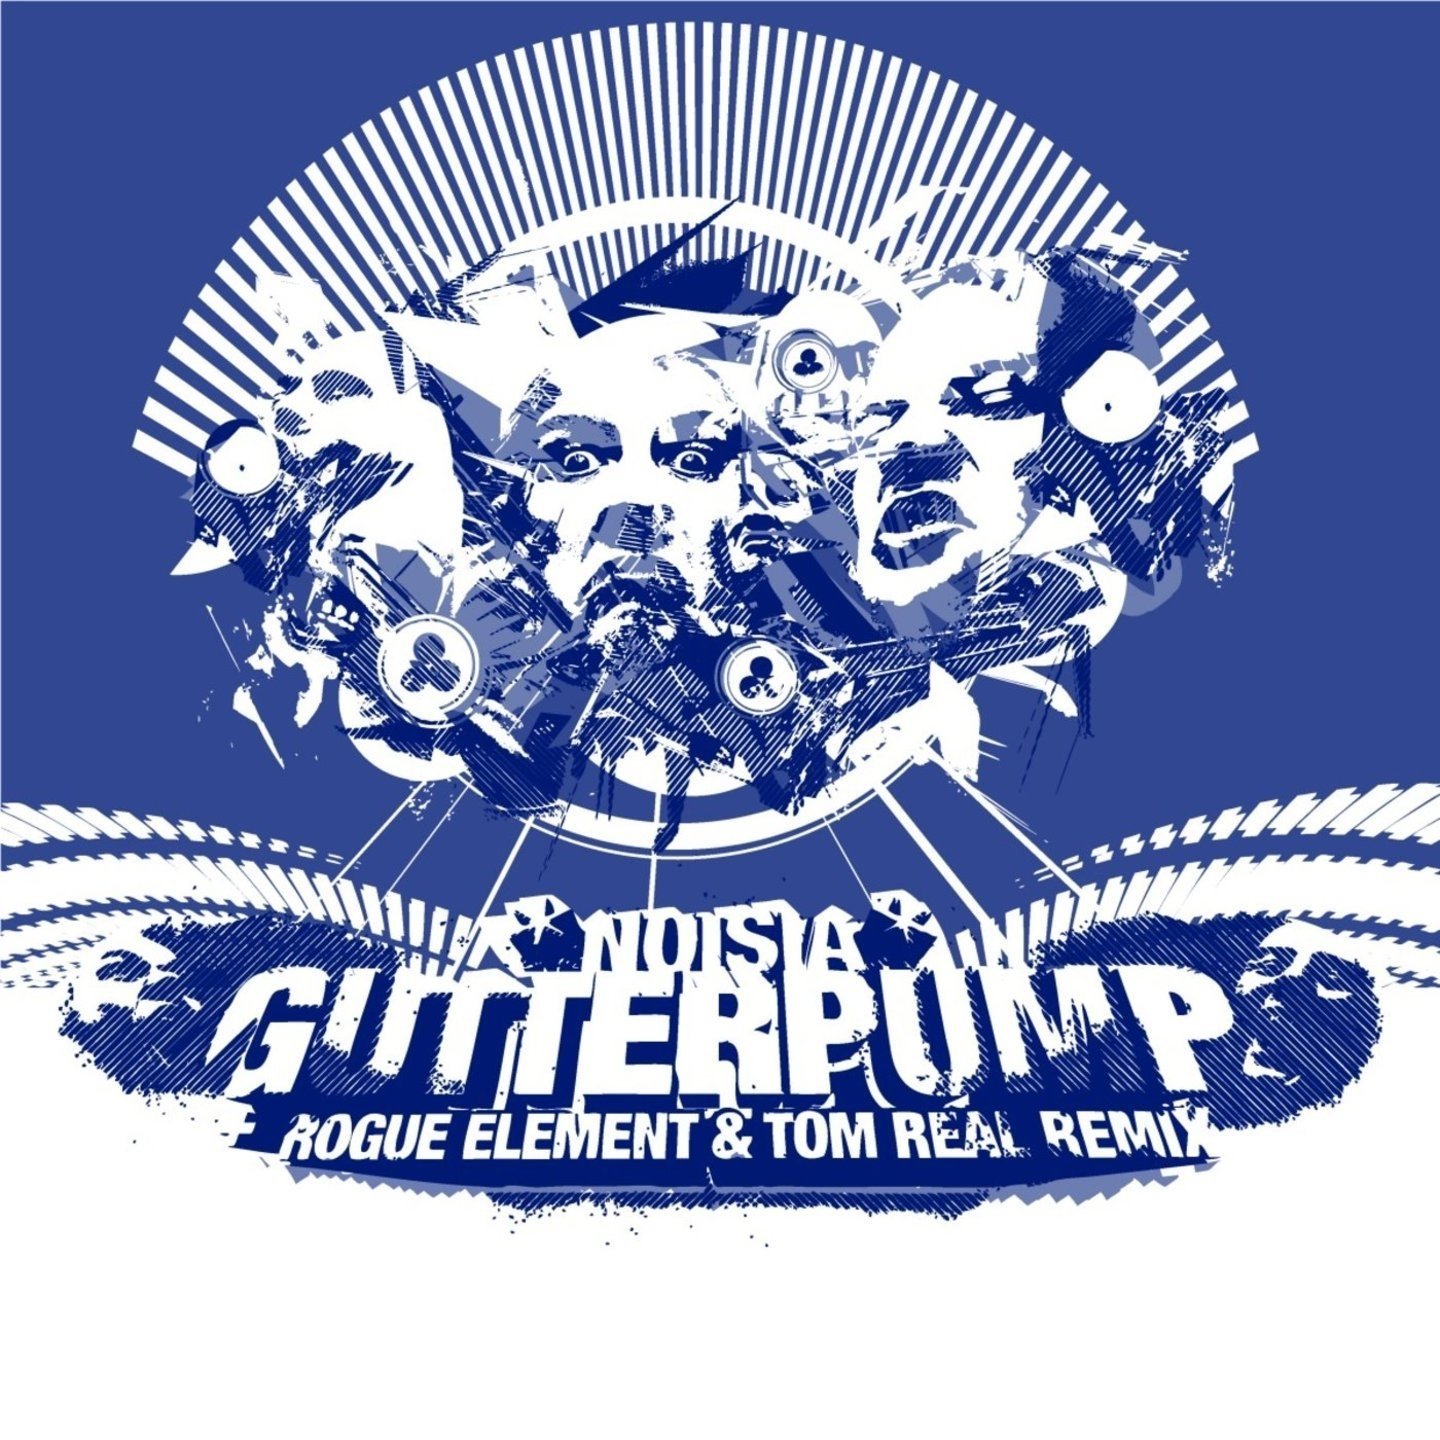 Gutterpump (Rogue Element & Tom Real Remix) фото Noisia, Rogue Element, Tom Real